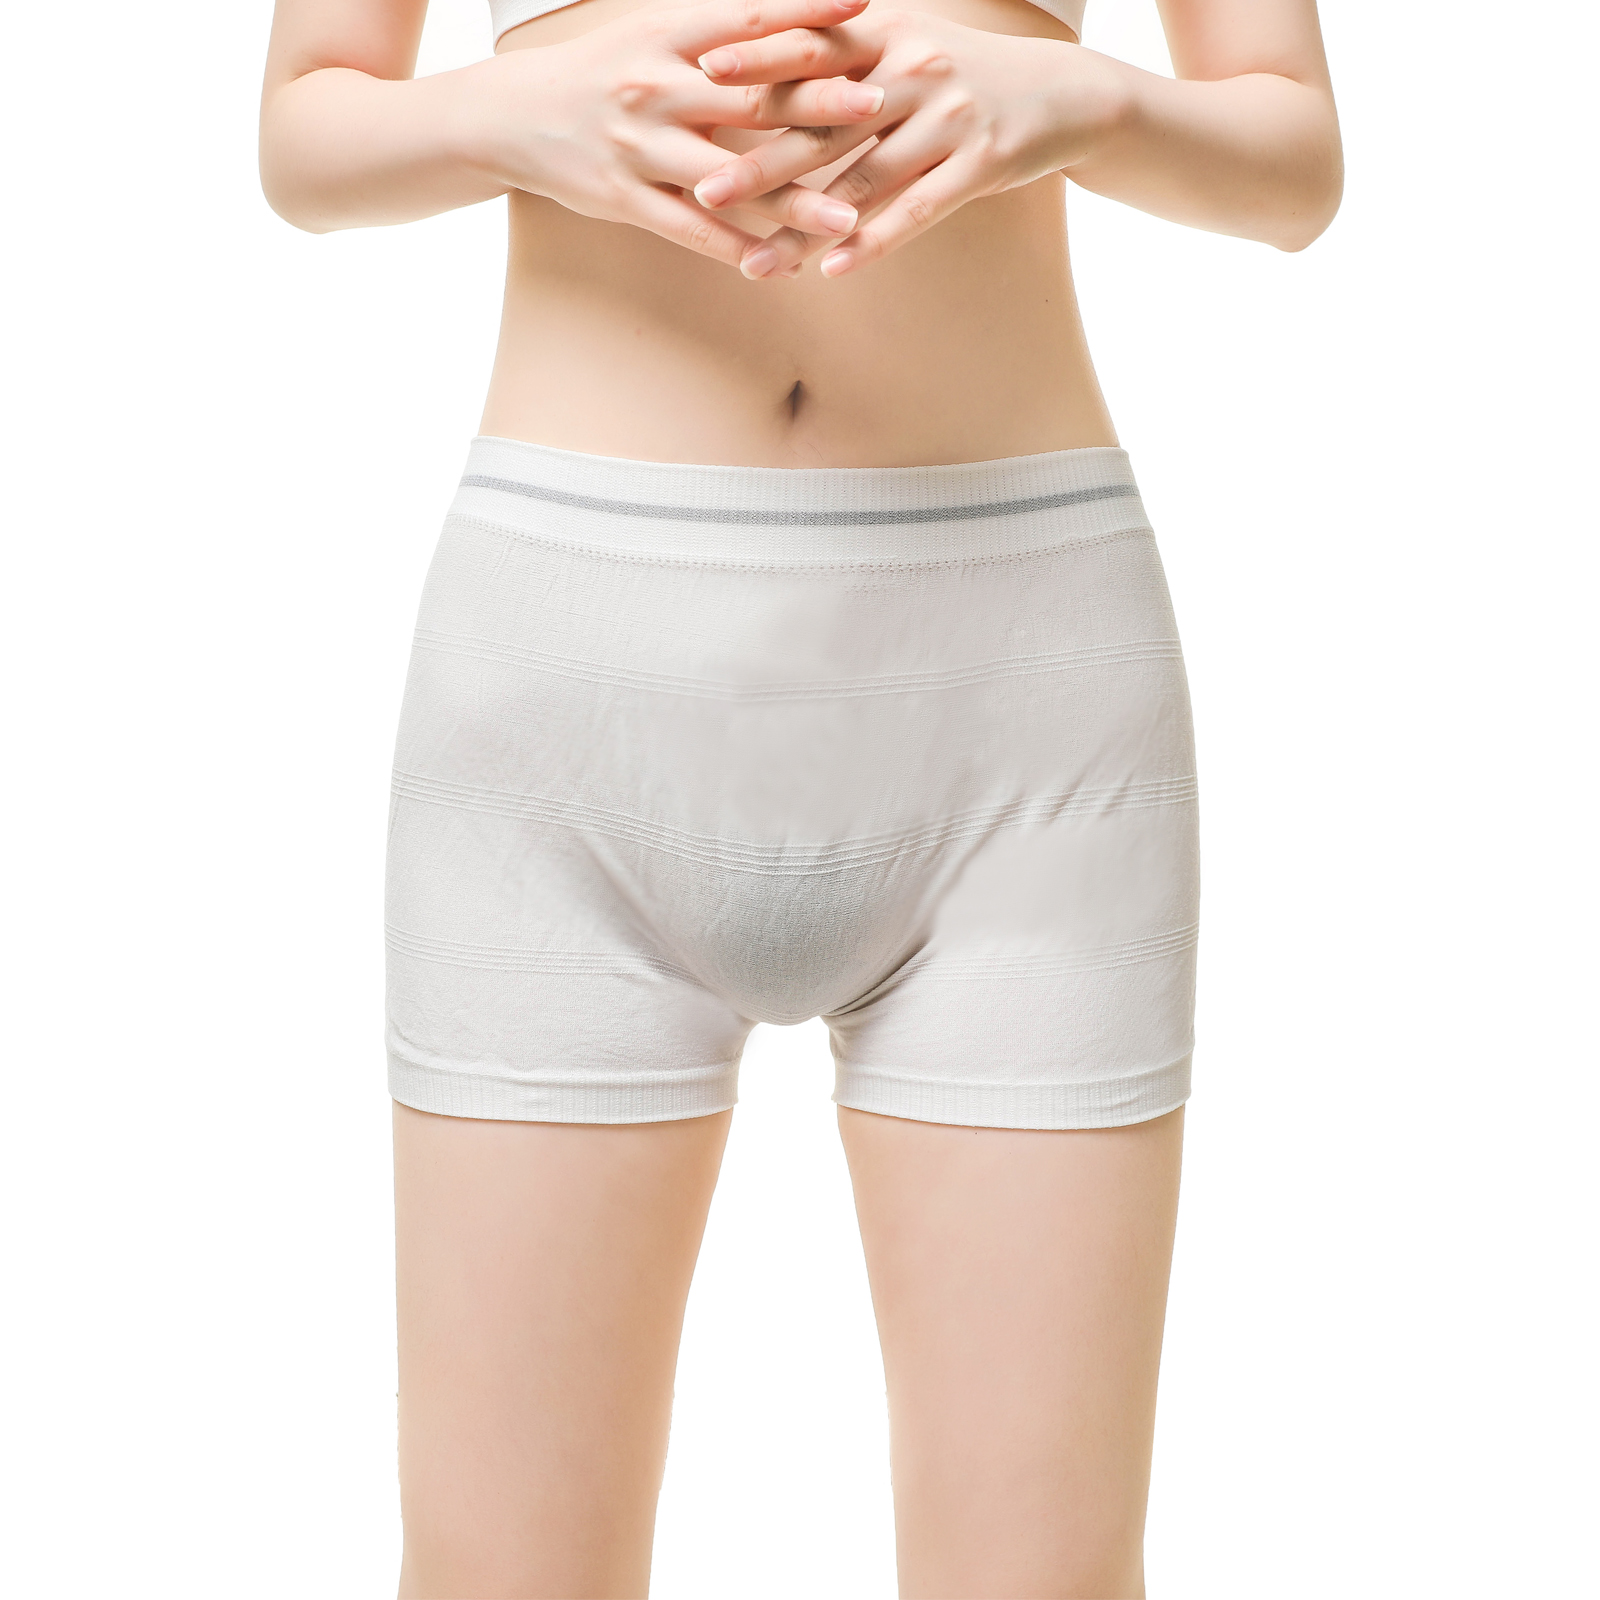 Pantalones de fijación de la ropa interior de la incontinencia para adultos